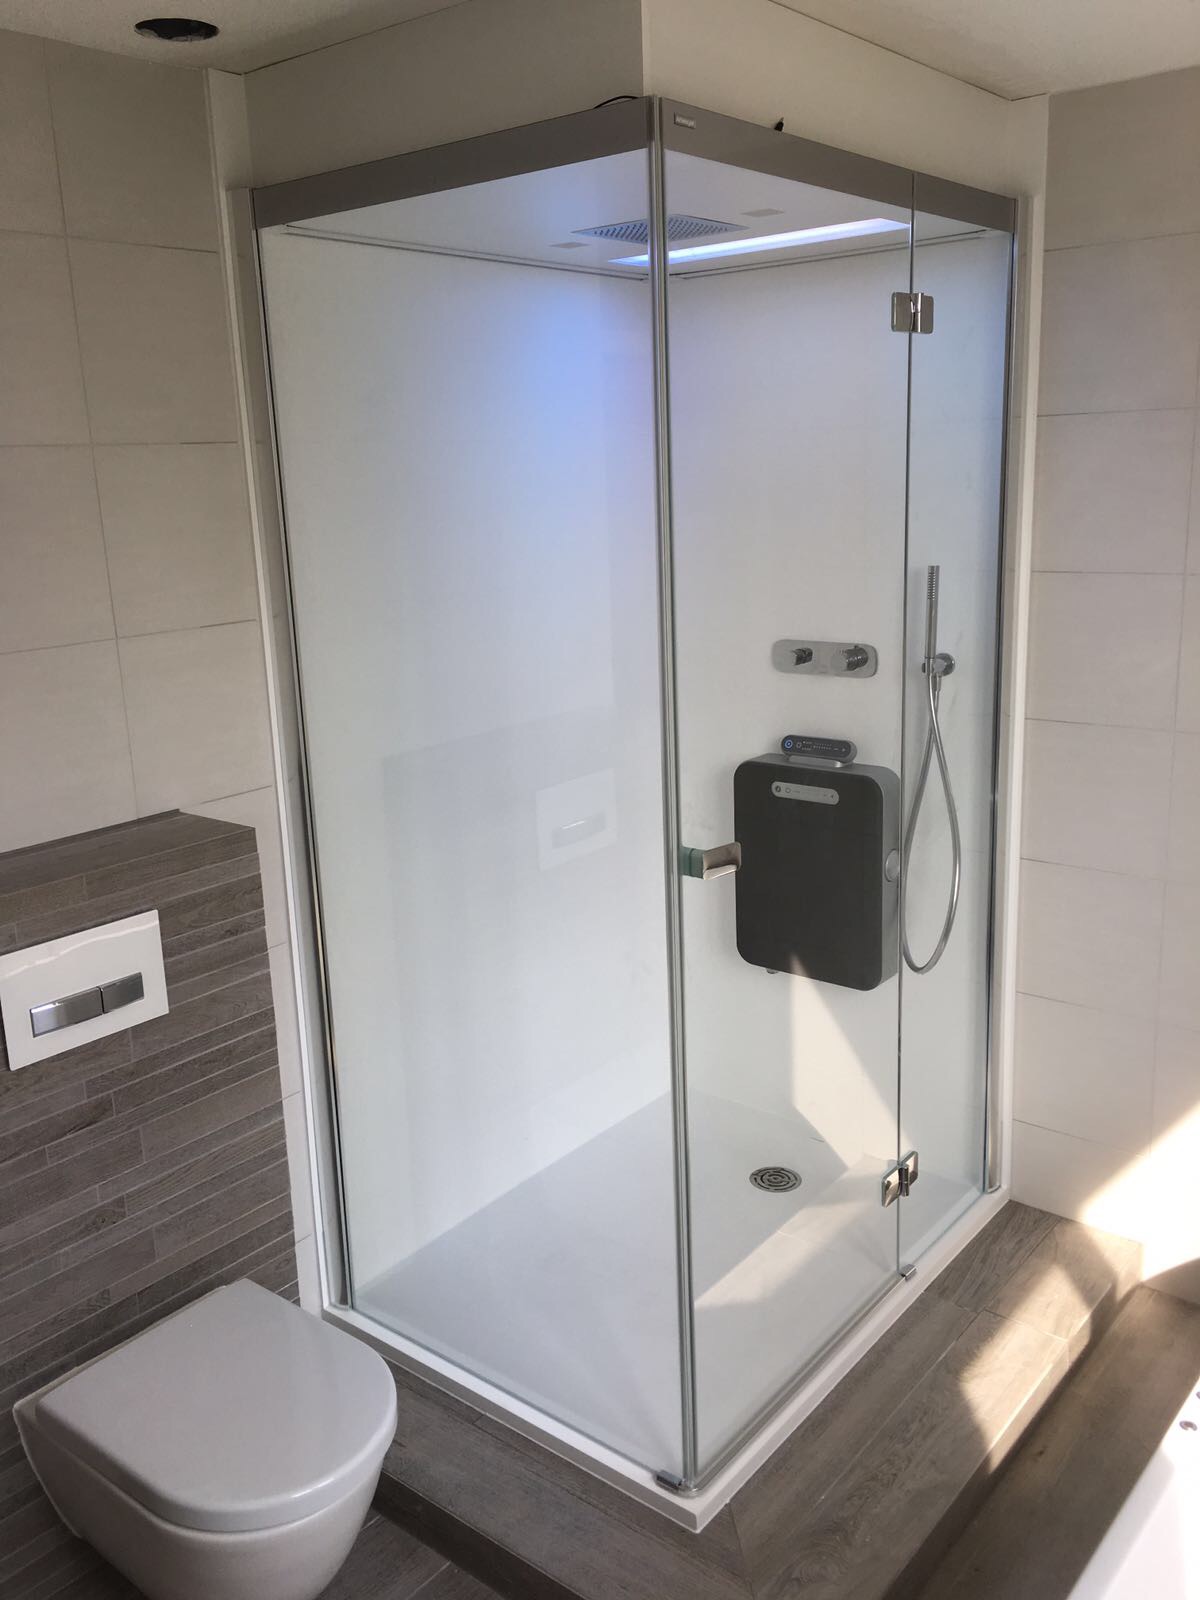 wandpanelen panolith complete badkamer badkamer wonen nl